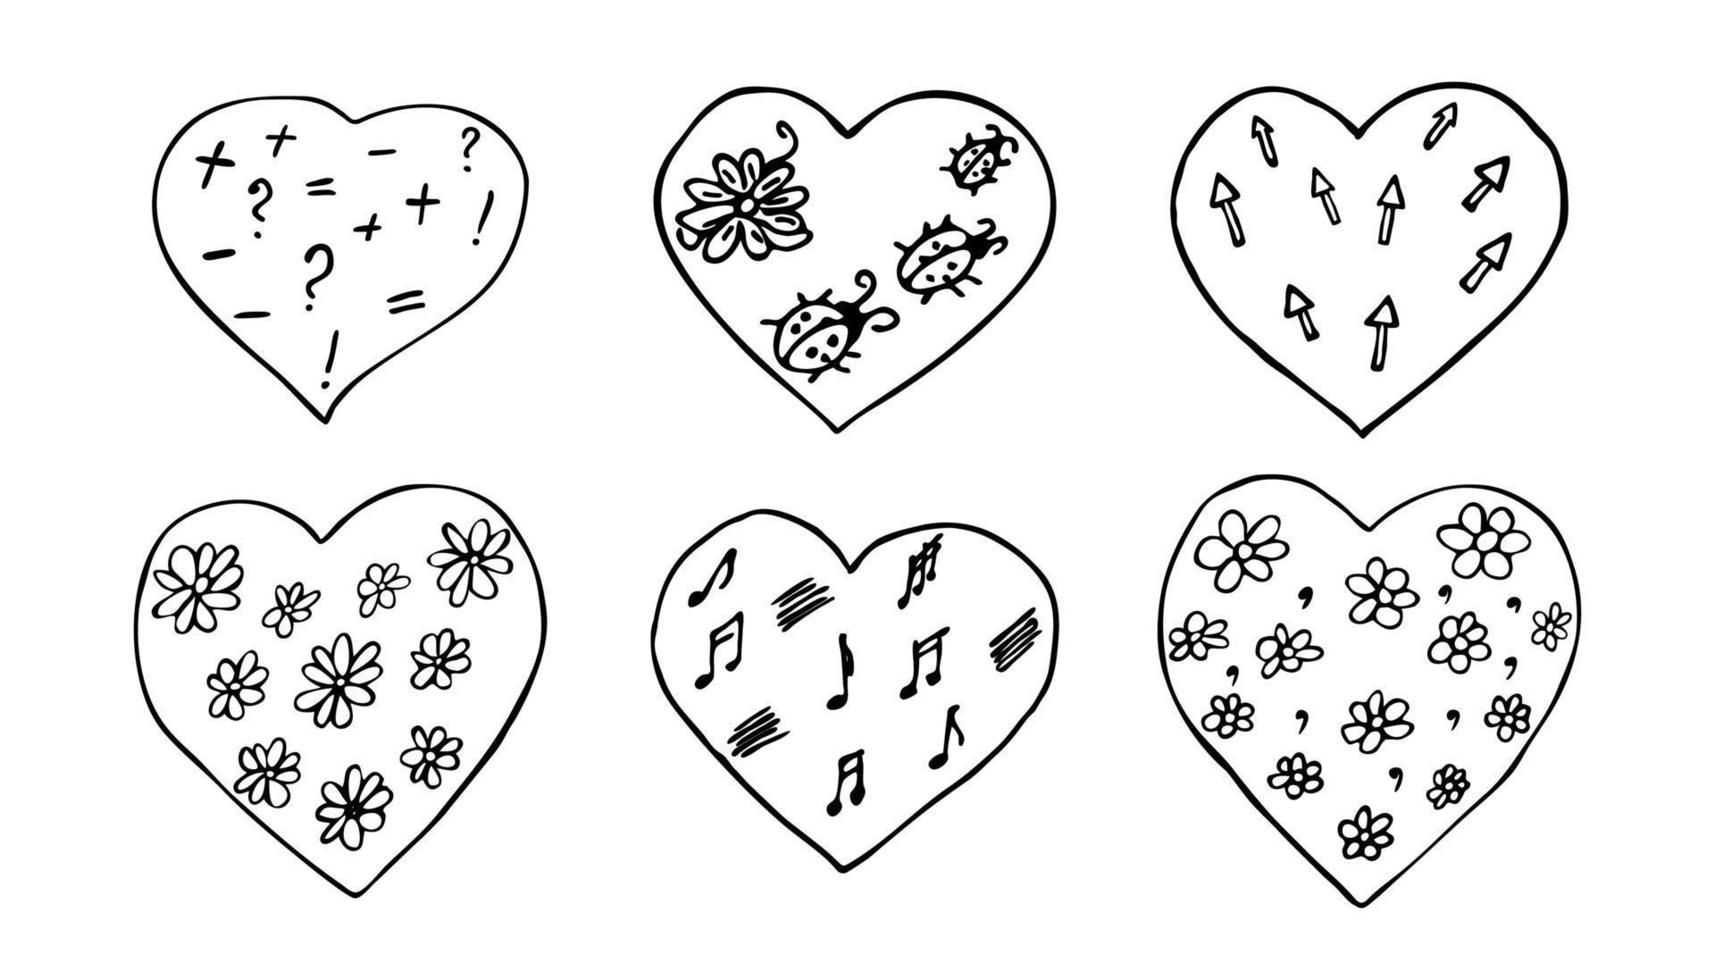 Vektor-Doodle-Herzen zum Ausmalen. handgezeichnete sechs herzformen mit blumen und dekorativen elementen. vektor